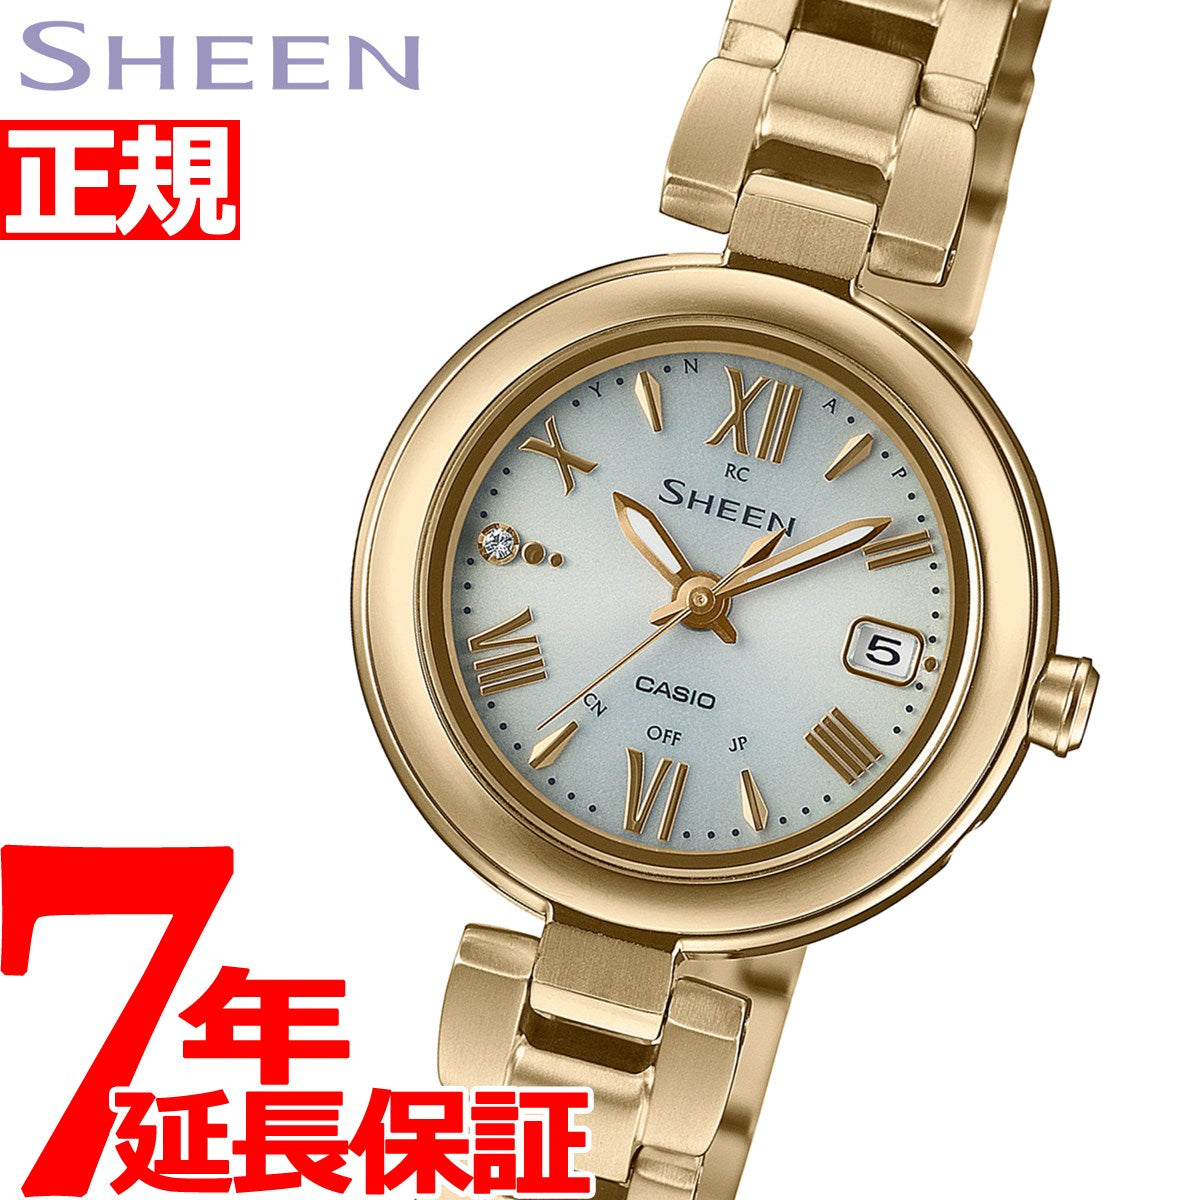 カシオ シーン 腕時計 レディース 電波ソーラー SHW-7100TG-7AJF 